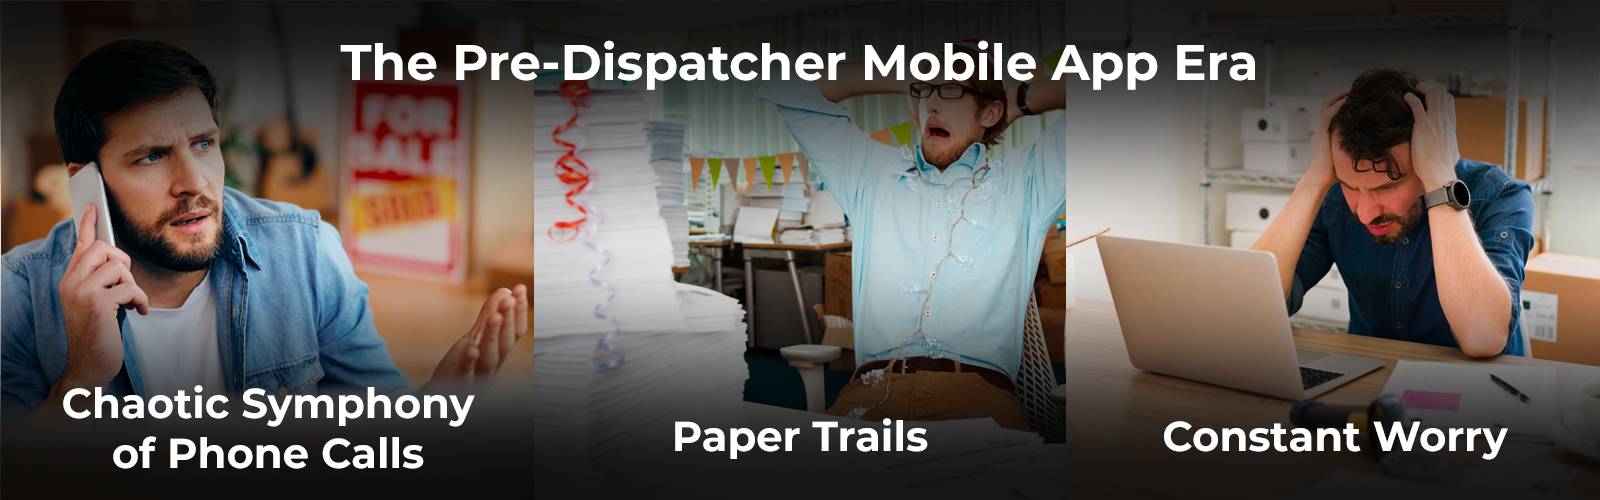 Das Leben eines Dispatchers ohne Dispatcher Mobile App